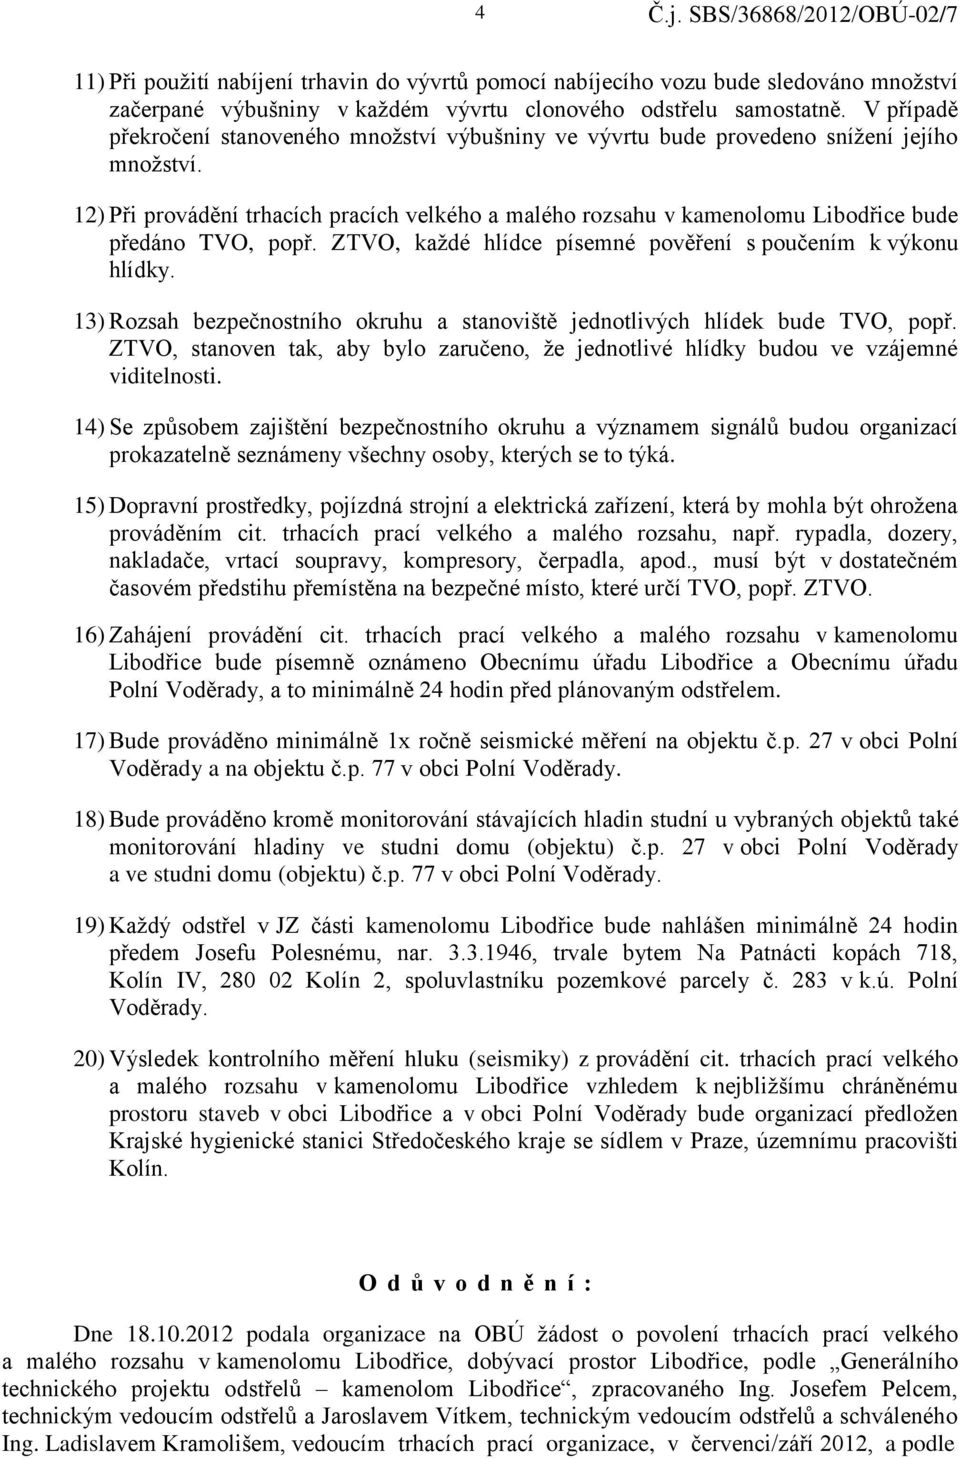 12) Při provádění trhacích pracích velkého a malého rozsahu v kamenolomu Libodřice bude předáno TVO, popř. ZTVO, každé hlídce písemné pověření s poučením k výkonu hlídky.